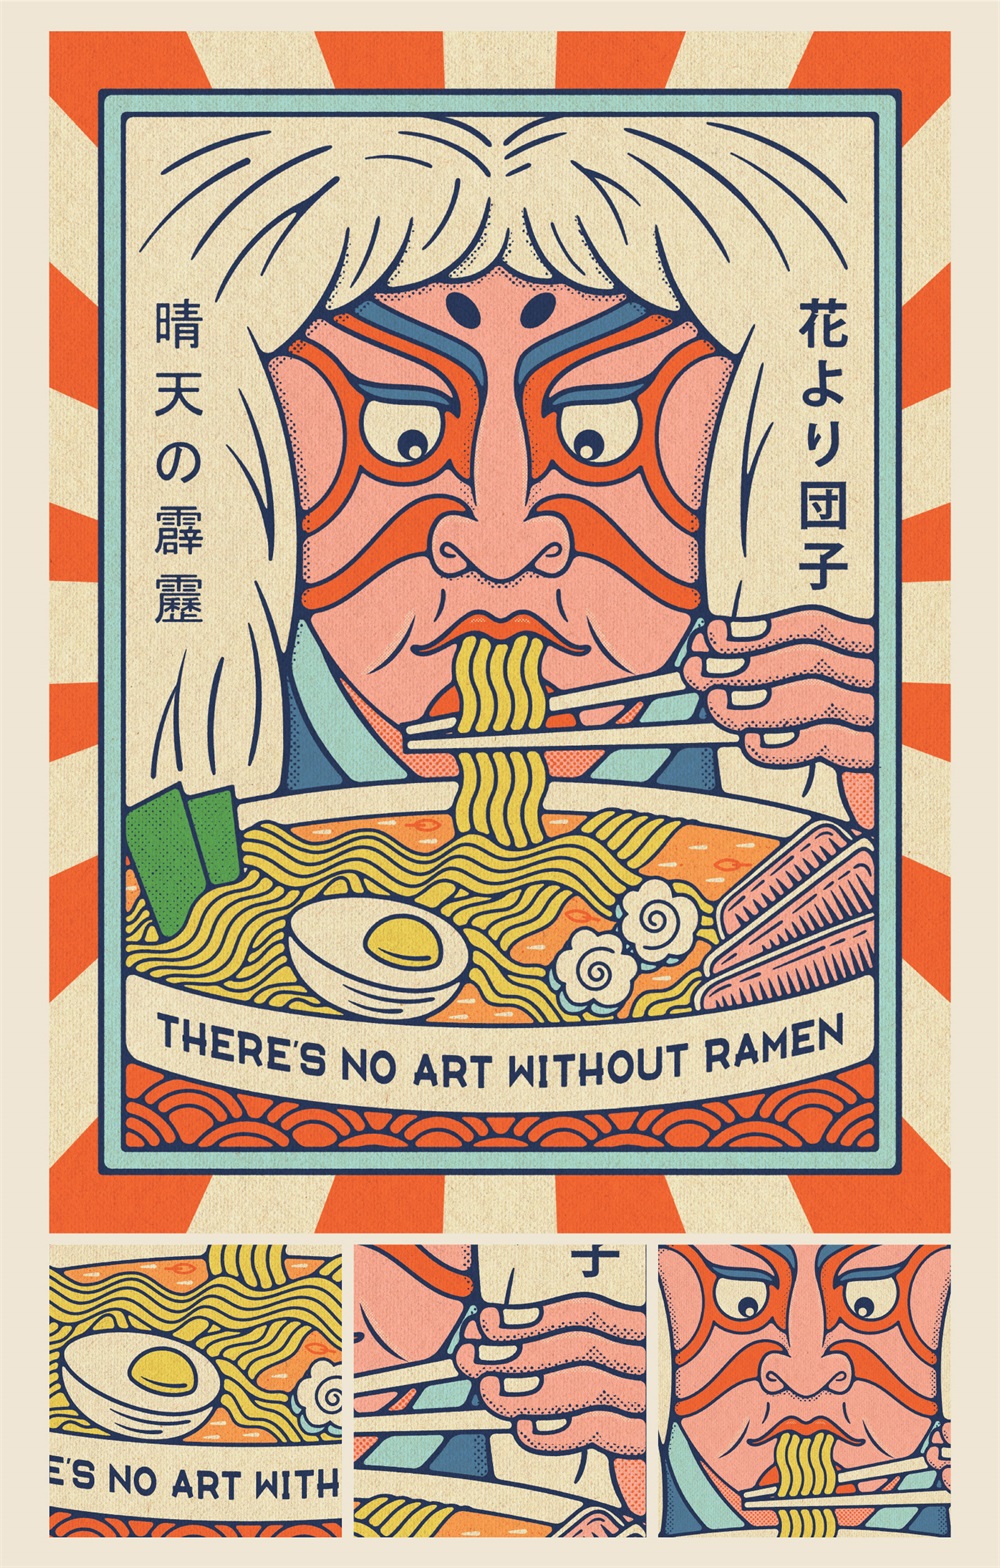 日式风情！9款美食主题的插画海报